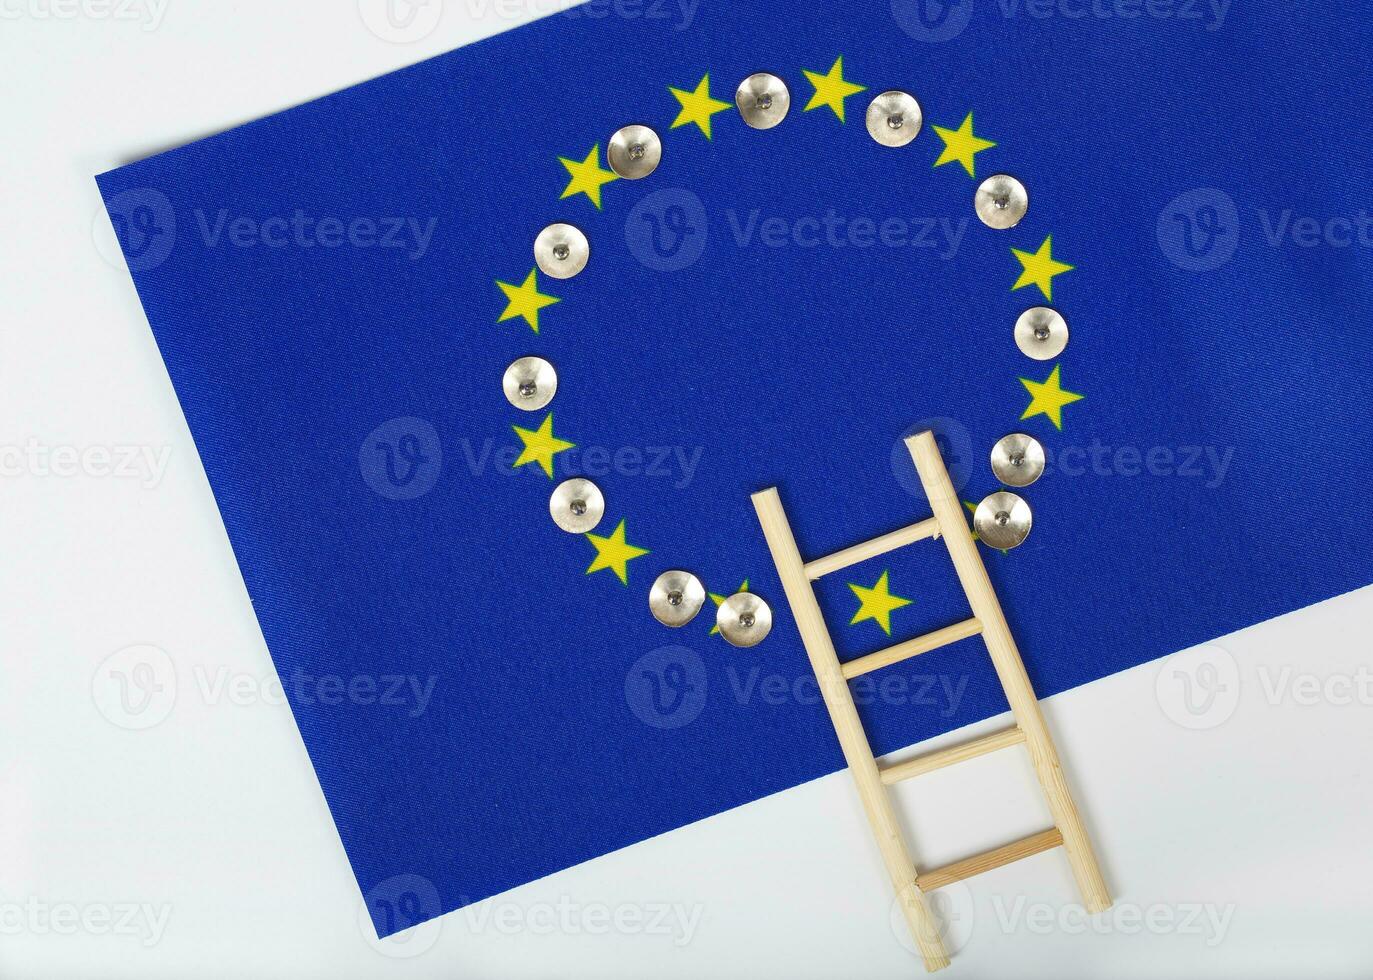 Ladder and pins on an European flag. Closeup photo